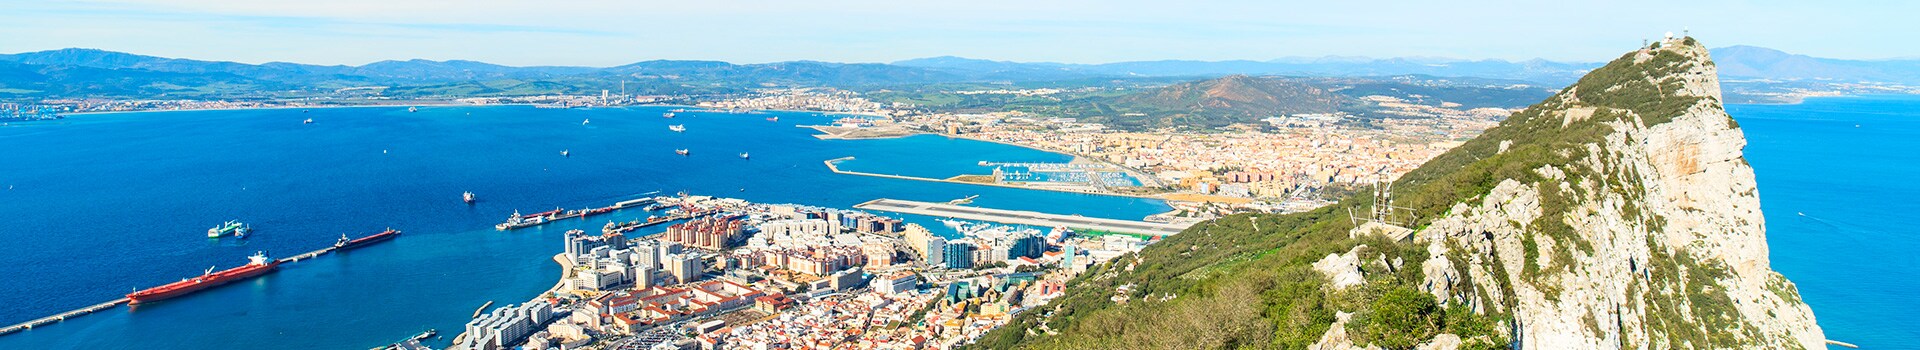 Lanzarote - Gibilterra